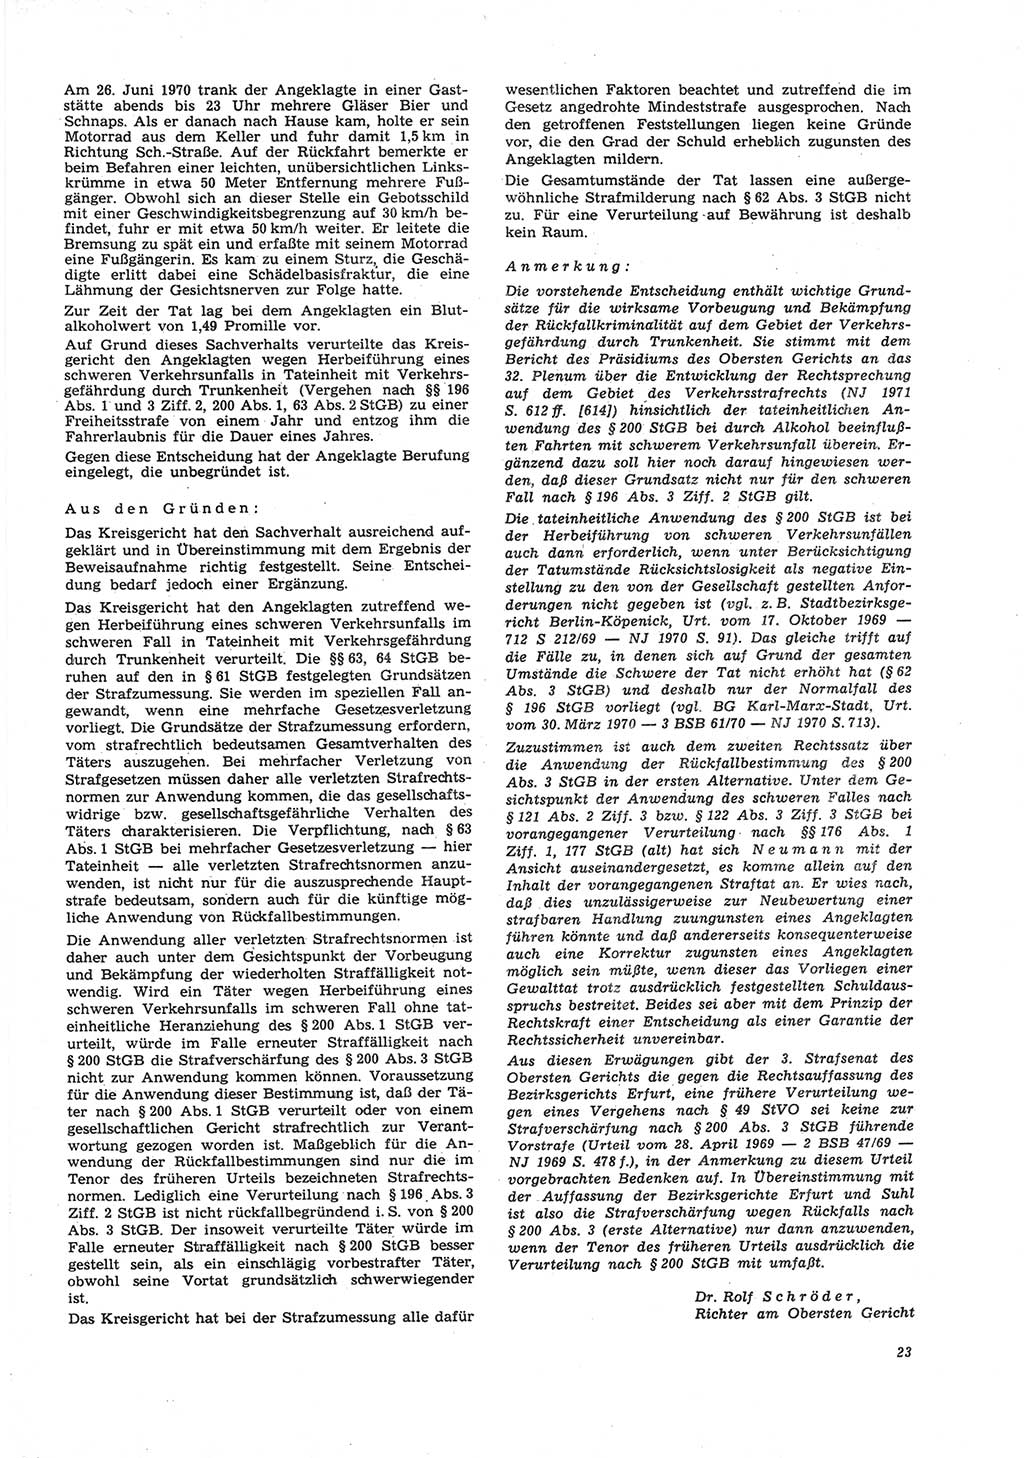 Neue Justiz (NJ), Zeitschrift für Recht und Rechtswissenschaft [Deutsche Demokratische Republik (DDR)], 26. Jahrgang 1972, Seite 23 (NJ DDR 1972, S. 23)